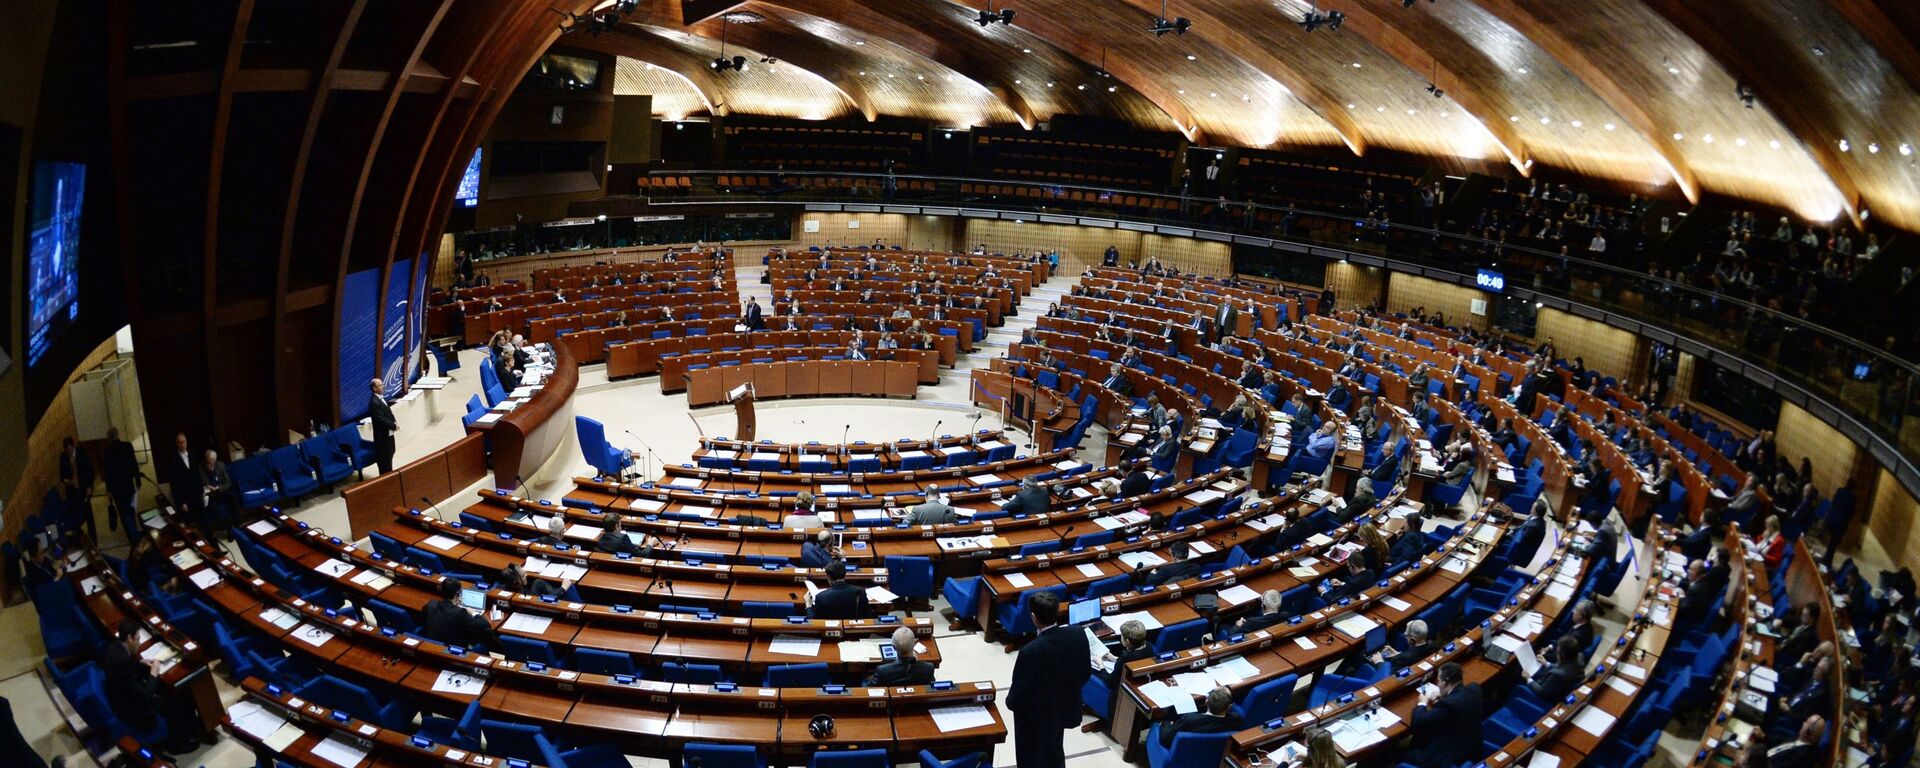 Пленарное заседание зимней сессии Парламентской ассамблеи Совета Европы - Sputnik Армения, 1920, 21.06.2021